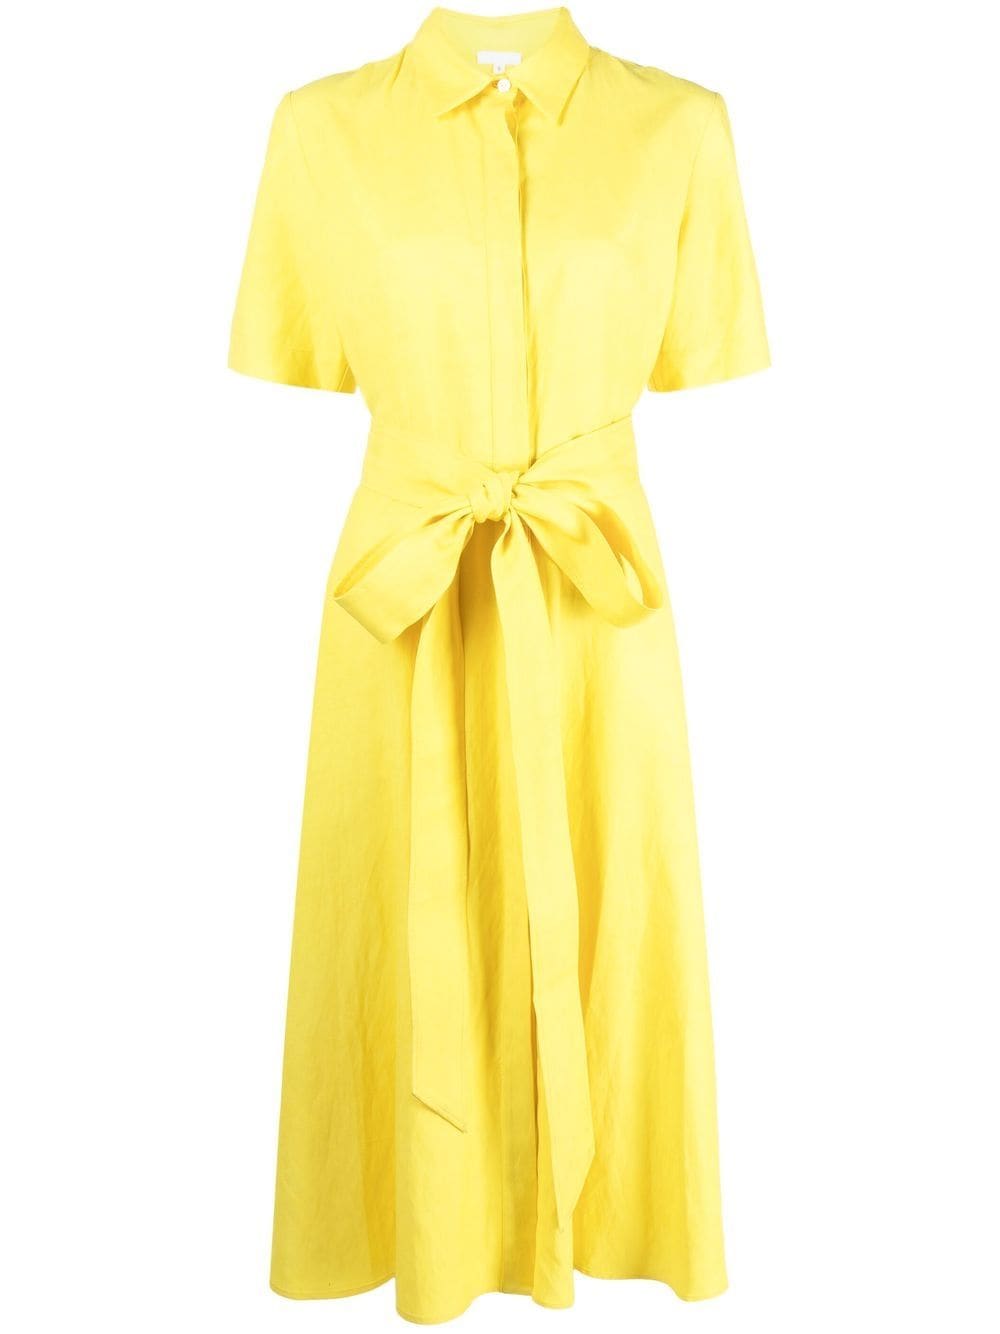 P.A.R.O.S.H. bow detail dress - Yellow von P.A.R.O.S.H.